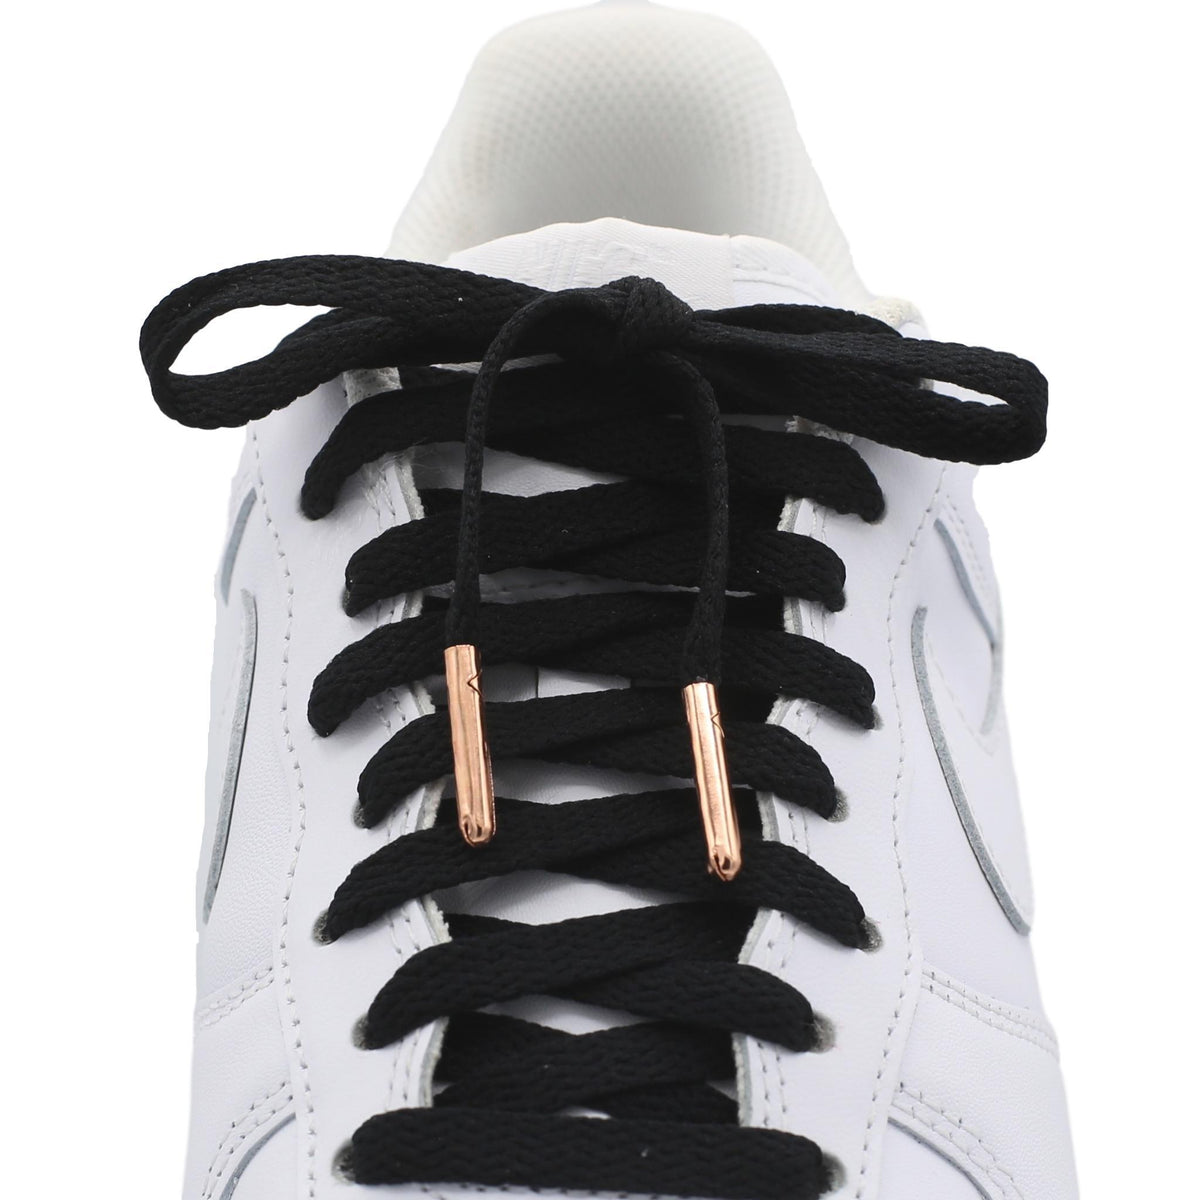 tennis shoe laces